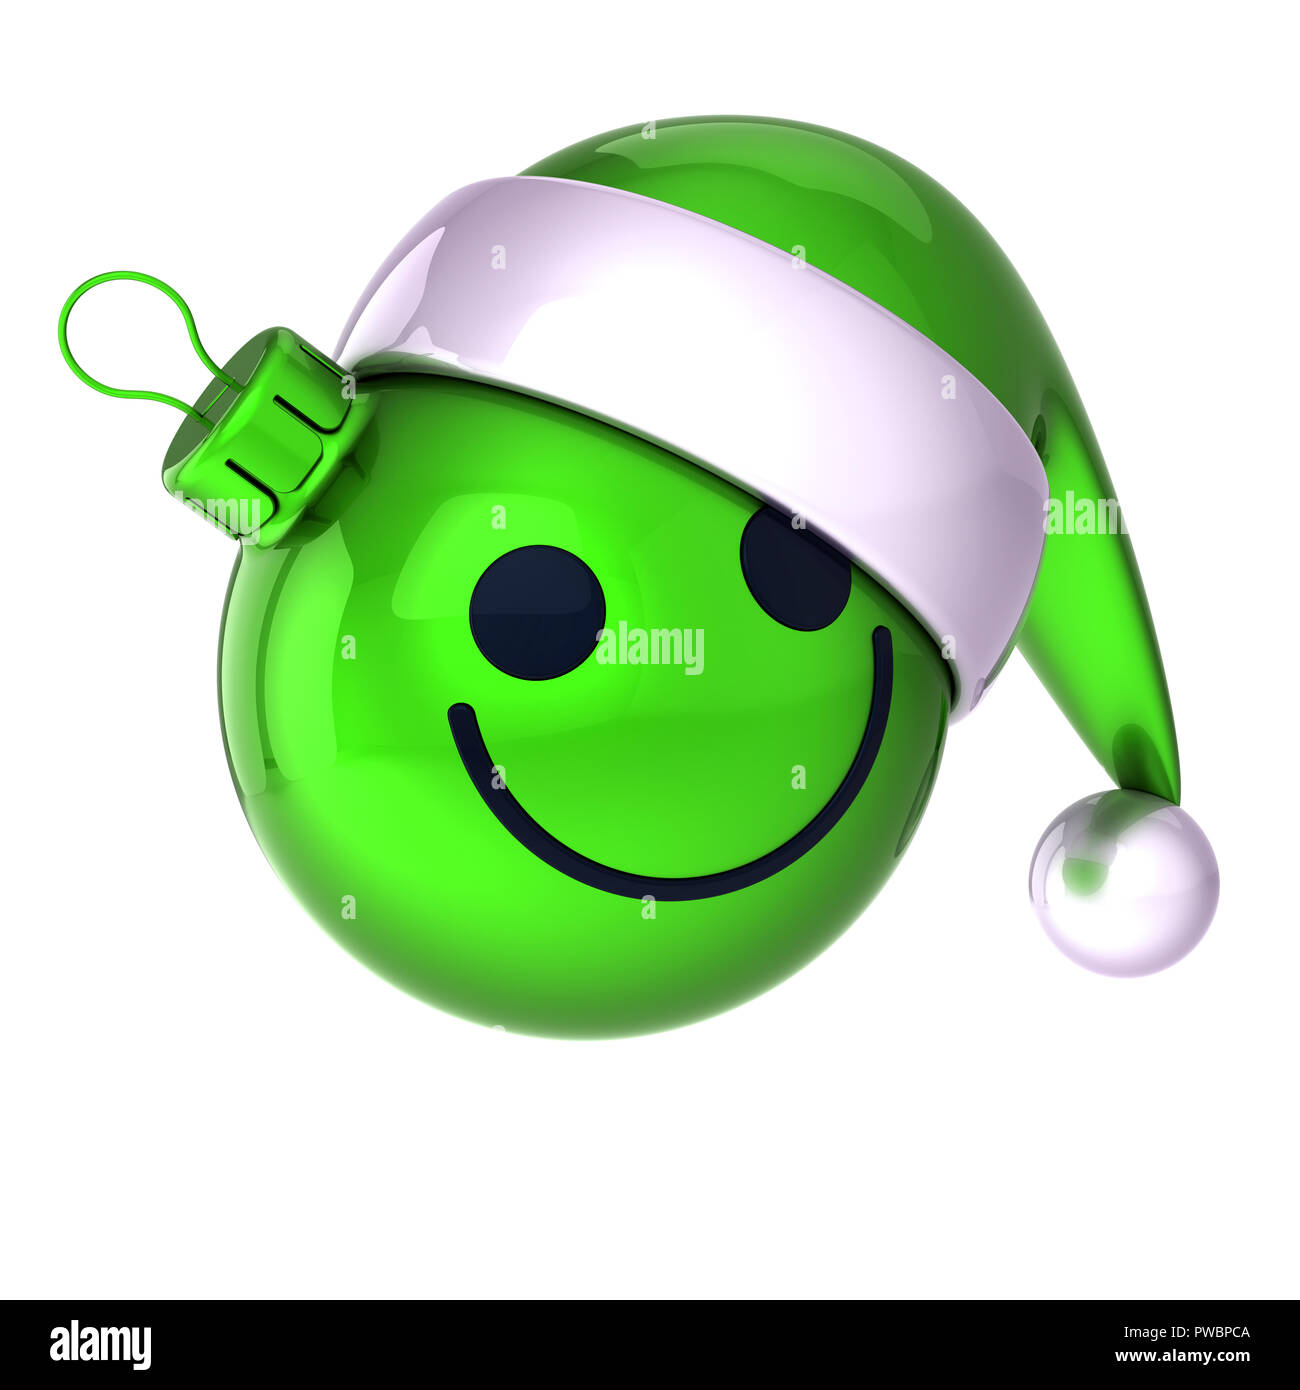 Weihnachten Kugel lächelndes Gesicht Emoticon. Silvester Tag  weihnachtskugel Santa Claus hat cartoon Dekoration niedlich Grün.  Freundliche lustige Person lacht Cha Stockfotografie - Alamy